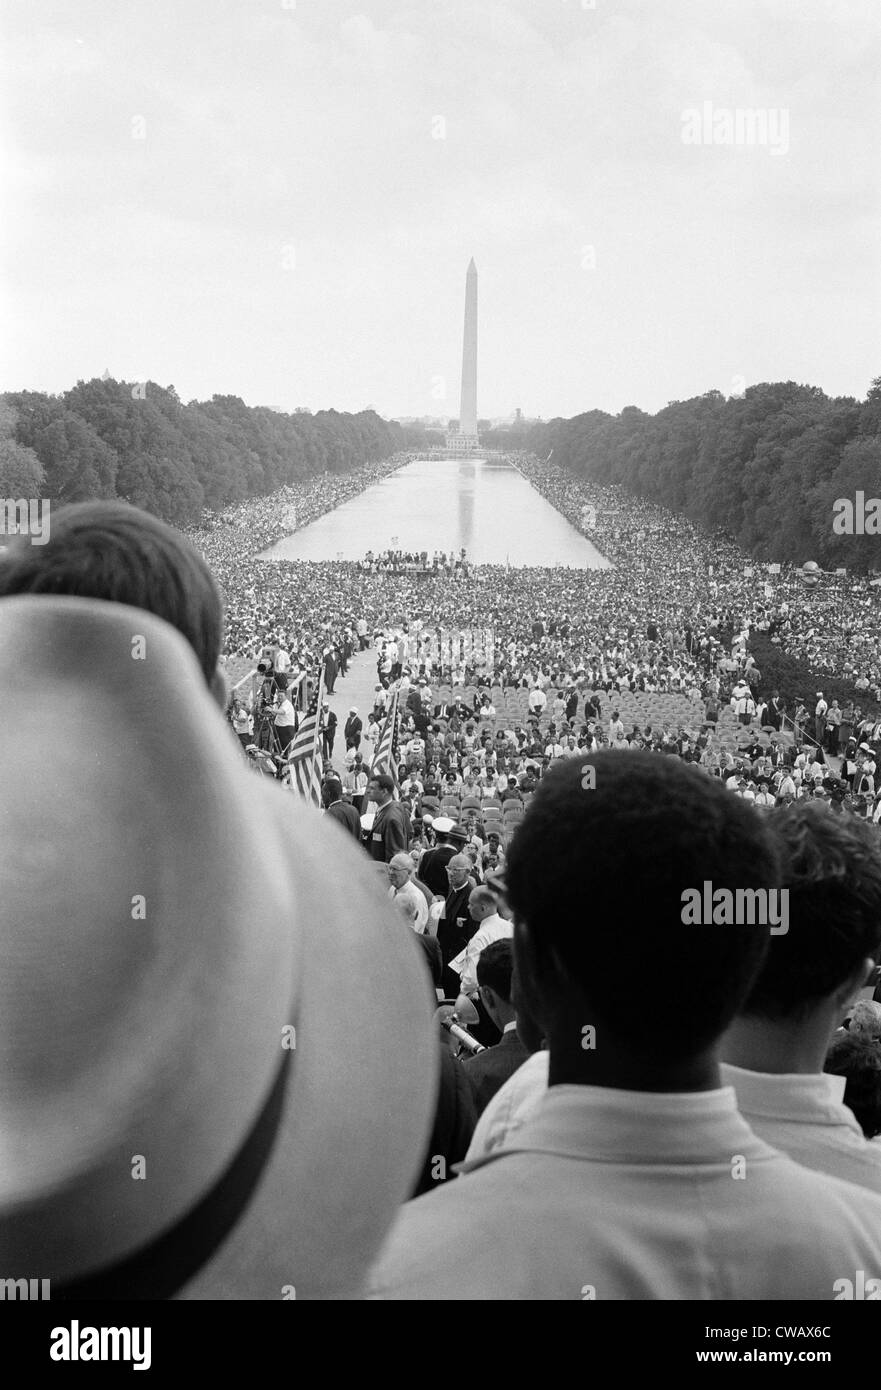 Manifestation à Washington D.C., par Warren K. Leffler, 28 août 1963. Banque D'Images